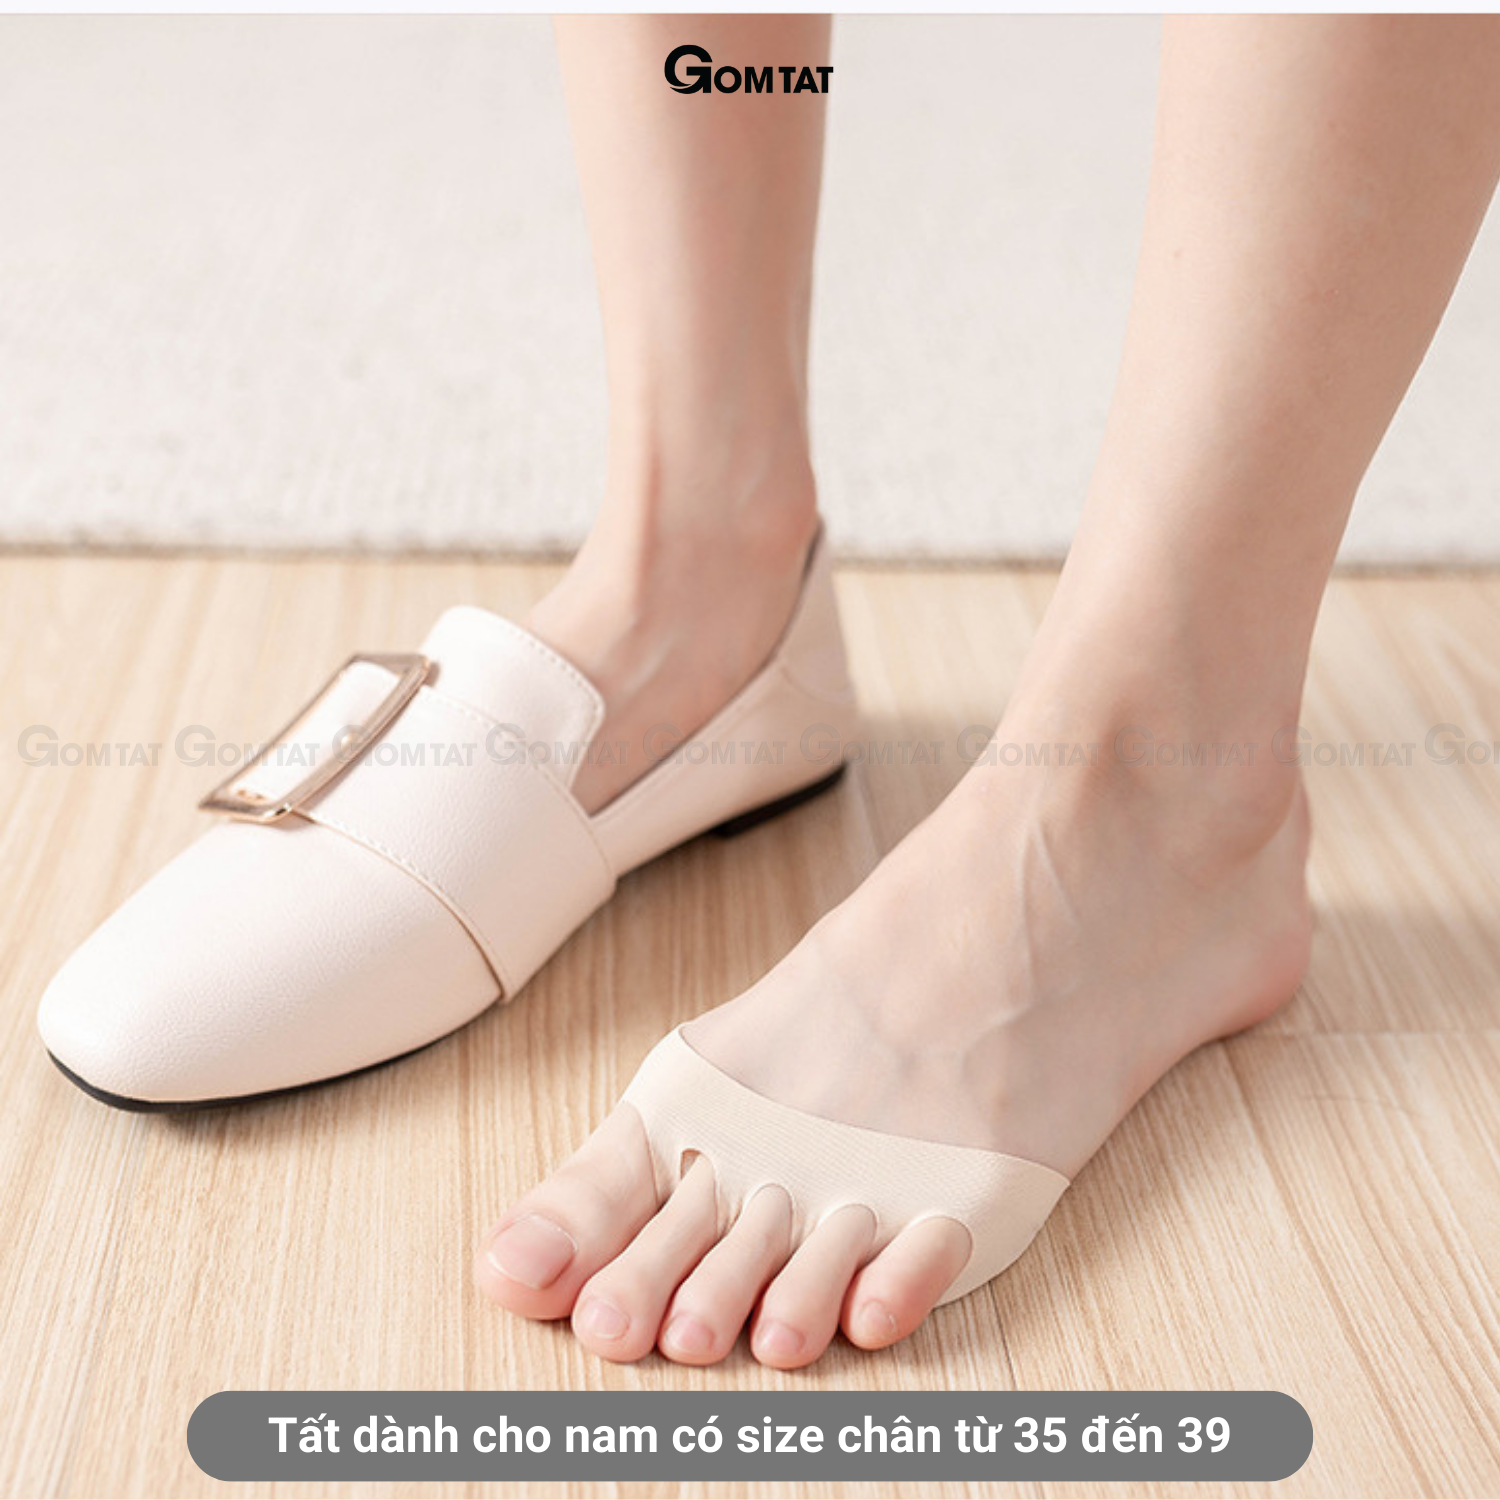 Miếng lót giày cao gót chất liệu sợi cotton cao cấp, tất đi giày cao gót mũi chân loại xỏ ngón - PO-MUICHAN-3010-1DOI